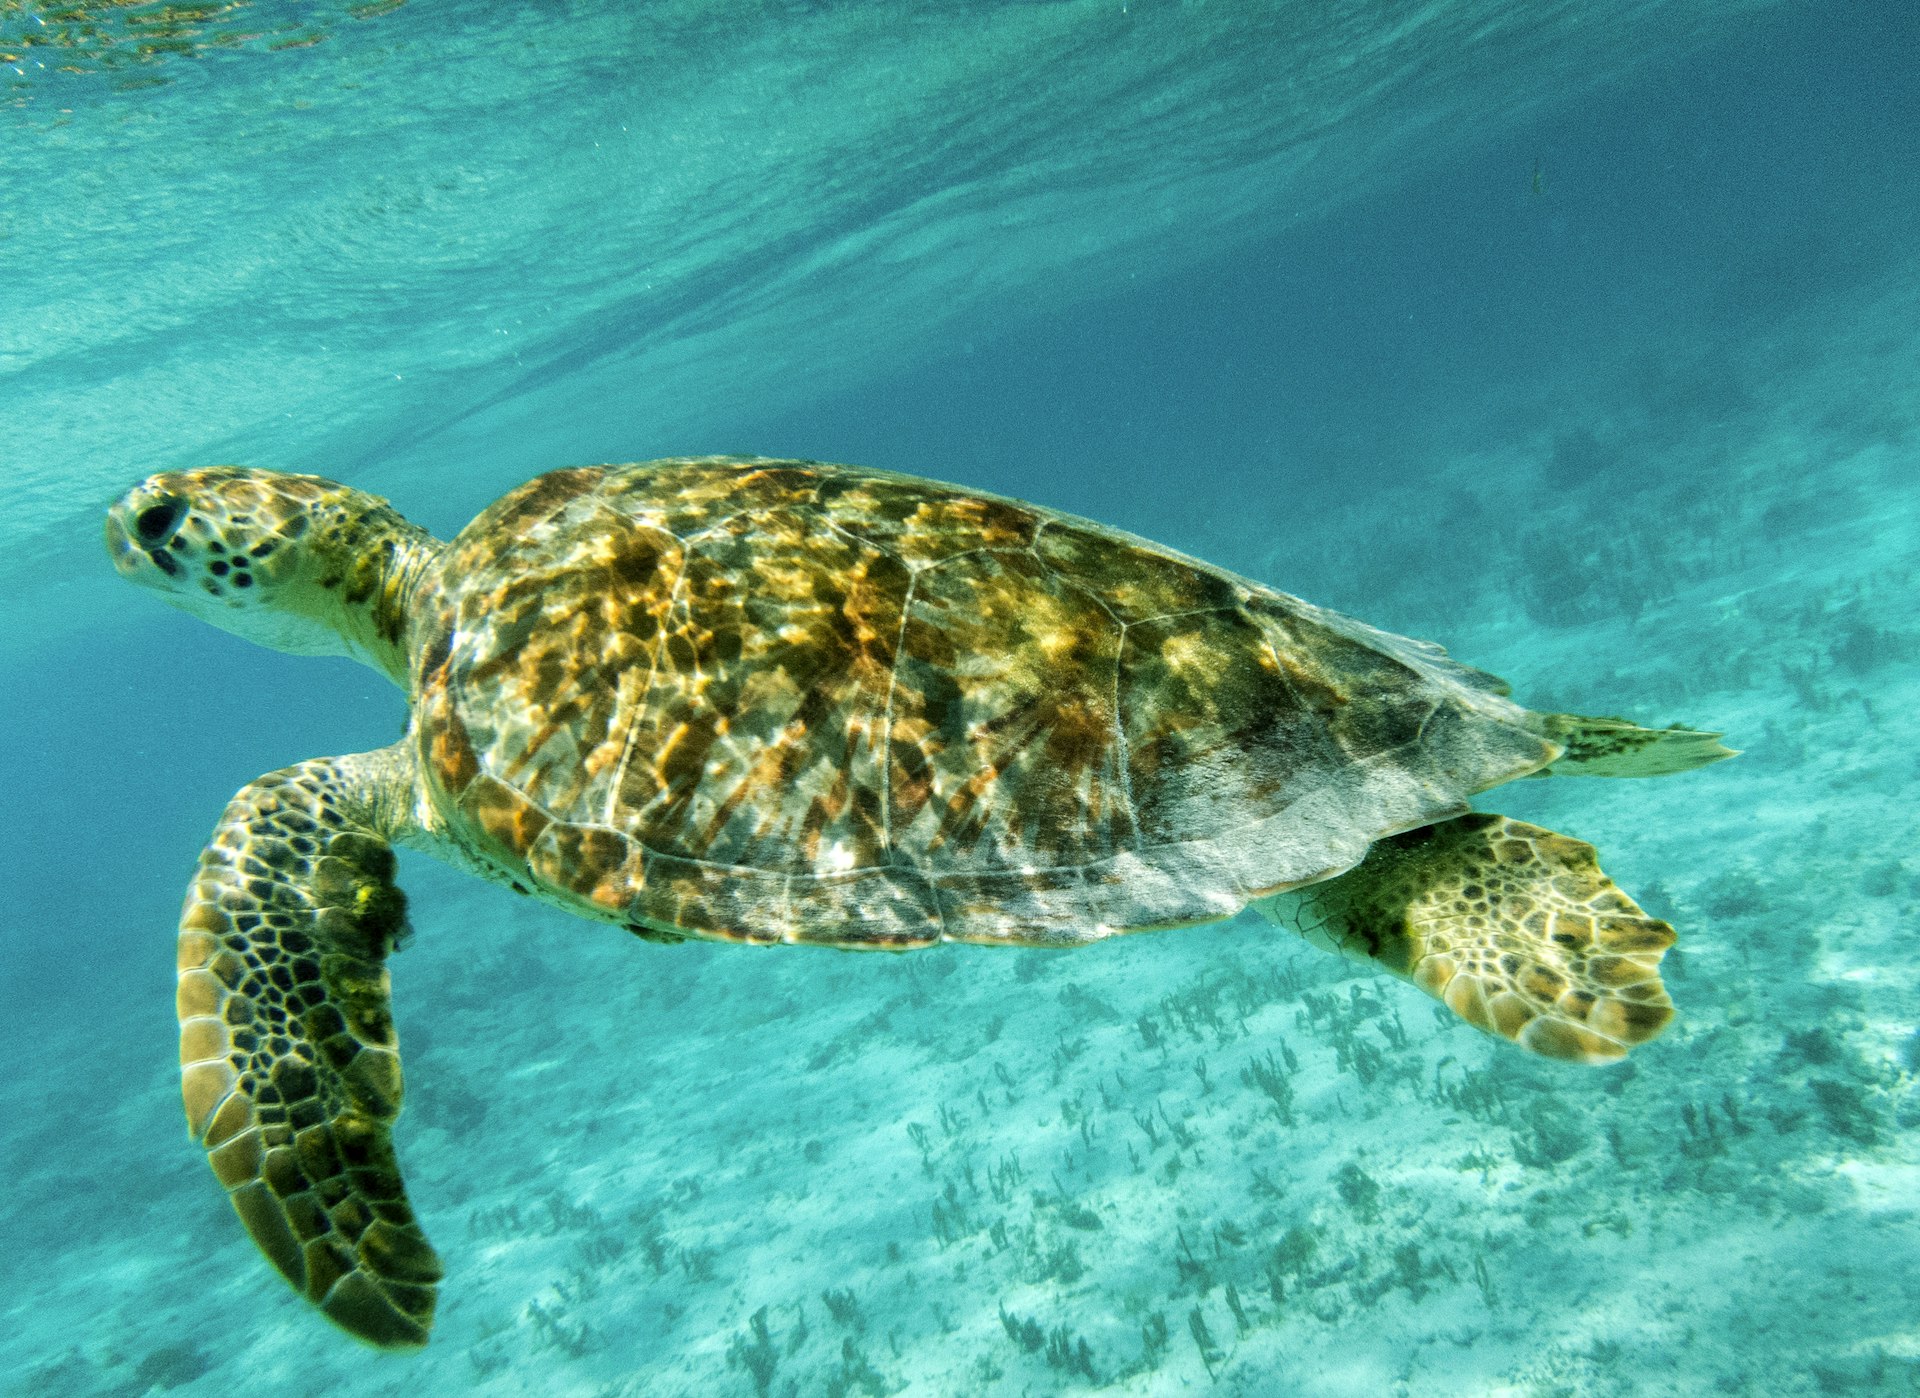 Zbliżenie na żółwia zielonego (Chelonia mydas) pływającego w nasłonecznionych, płytkich morzach karaibskich.  Tobago Cays, Marine Park: Saint Vincent i Grenadyny. 